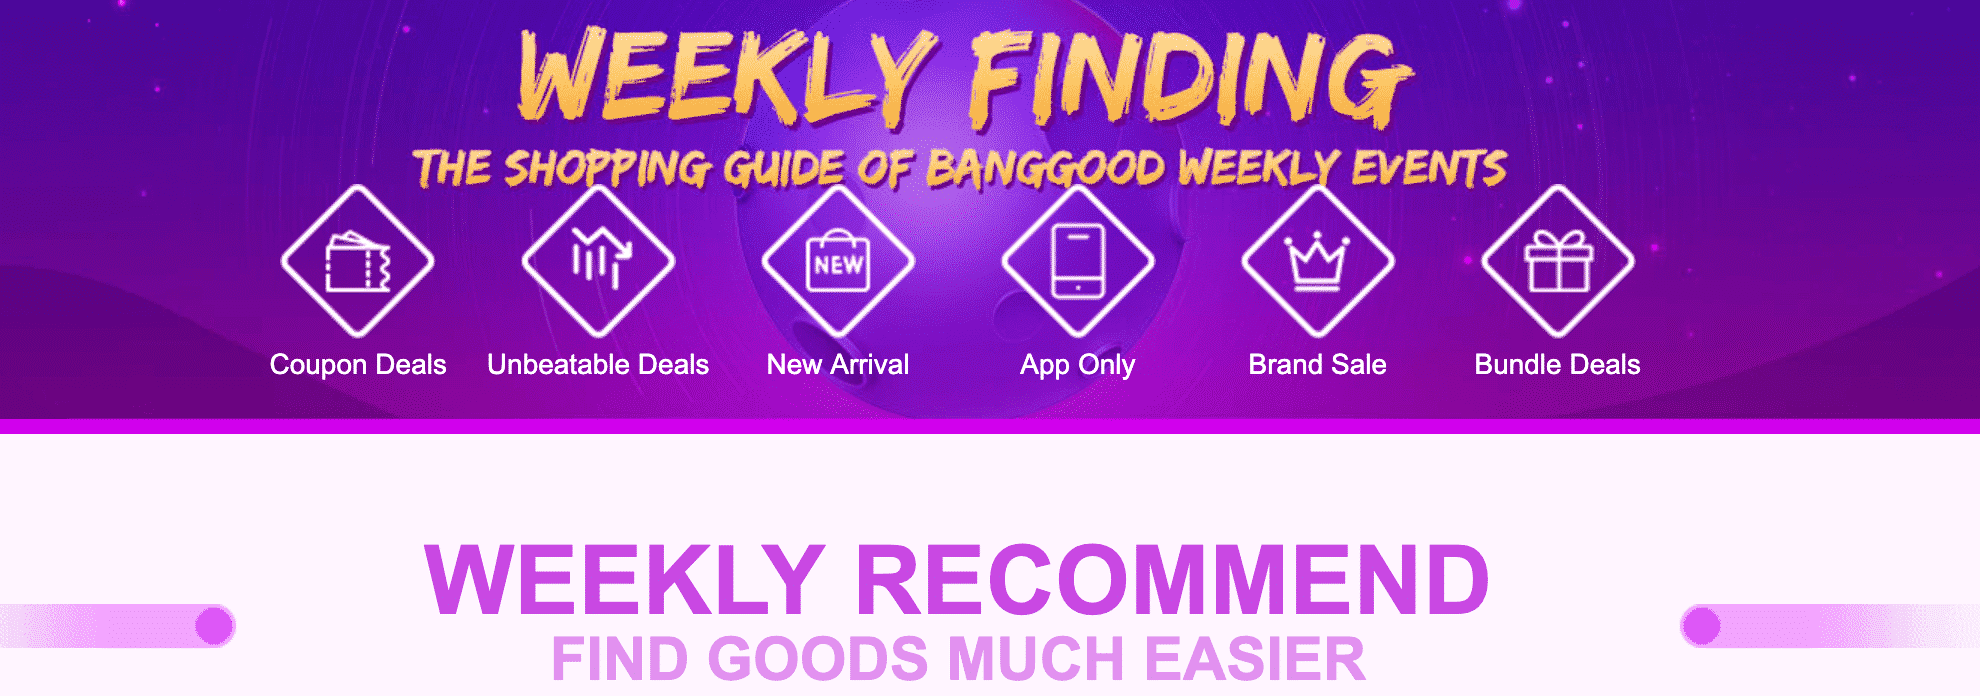 Shopping Guide of Banggood